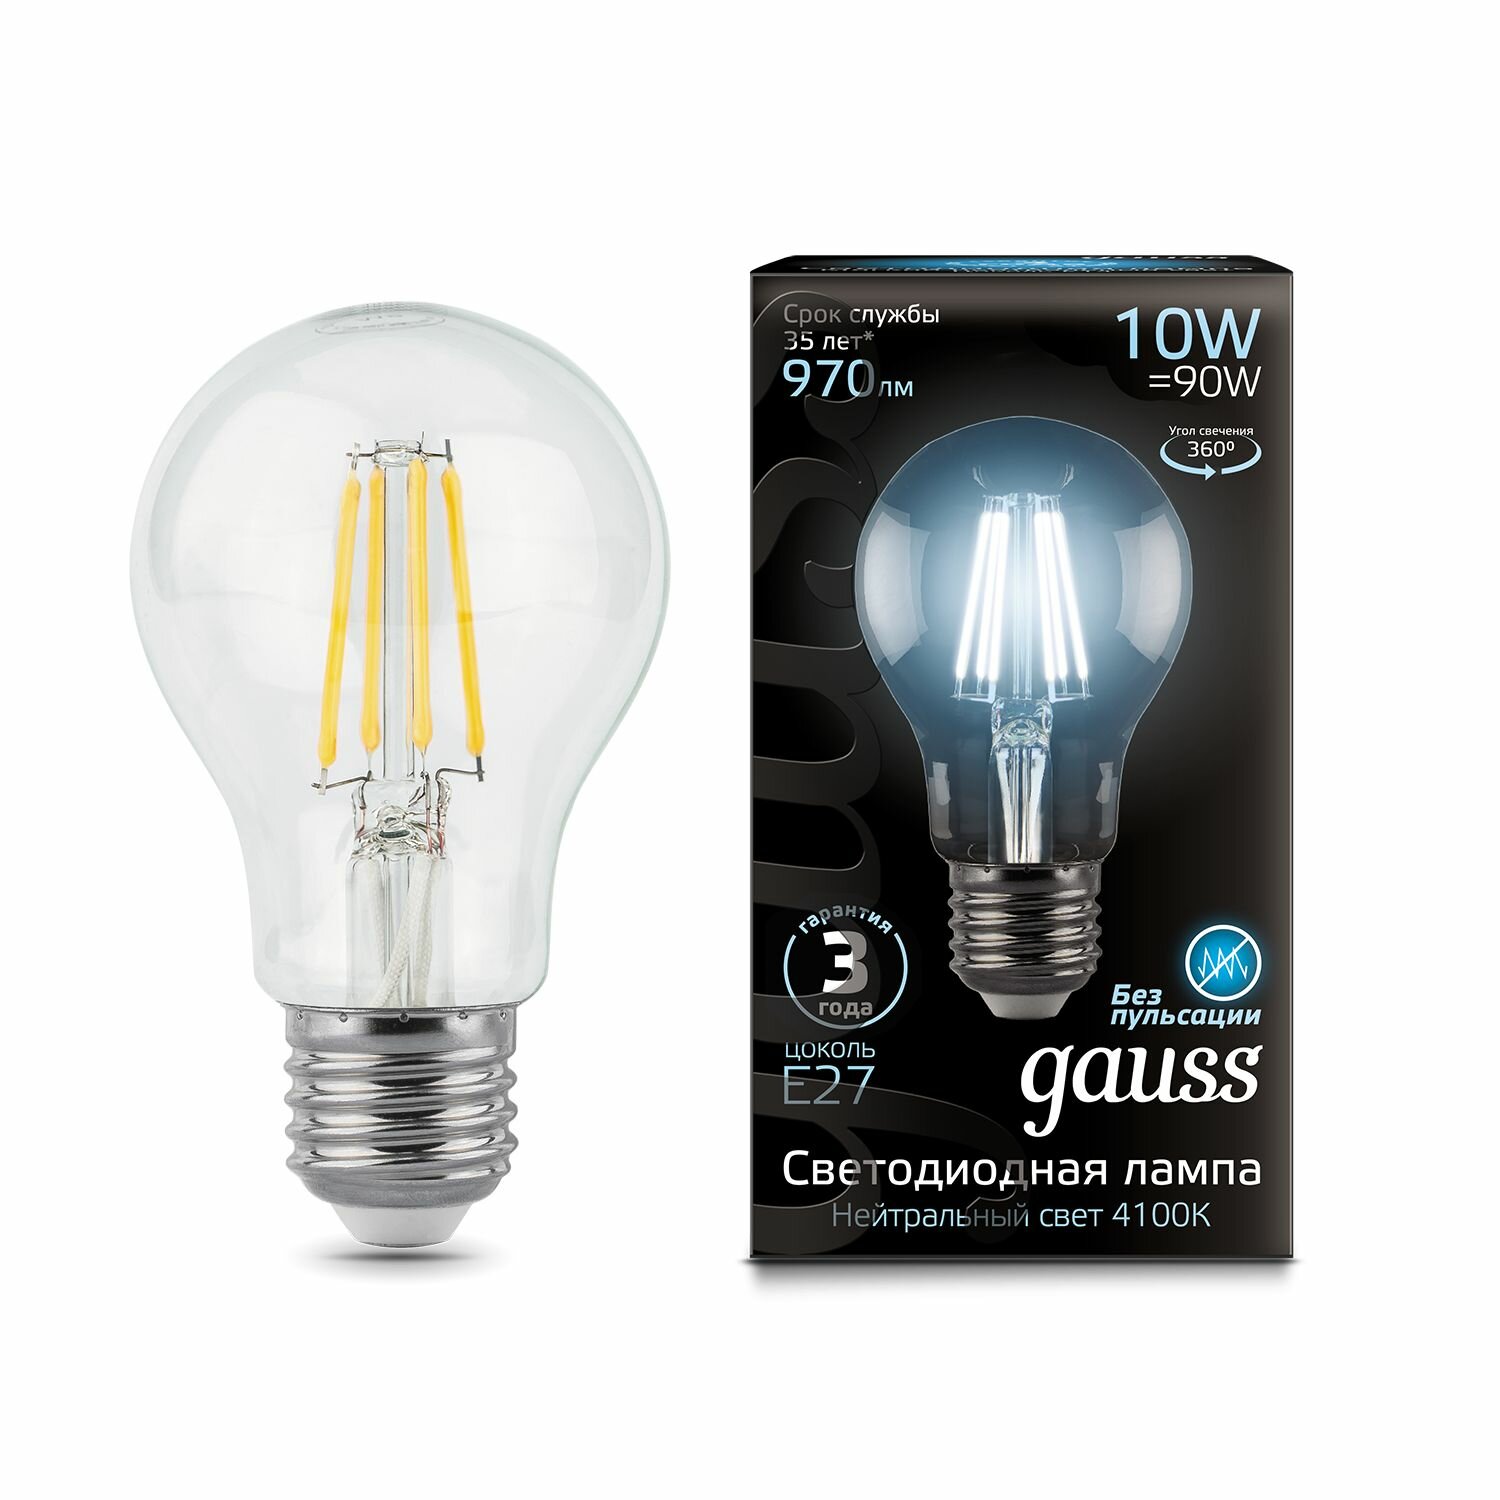 Лампа Gauss Filament А60 10W 970lm 4100К Е27 LED